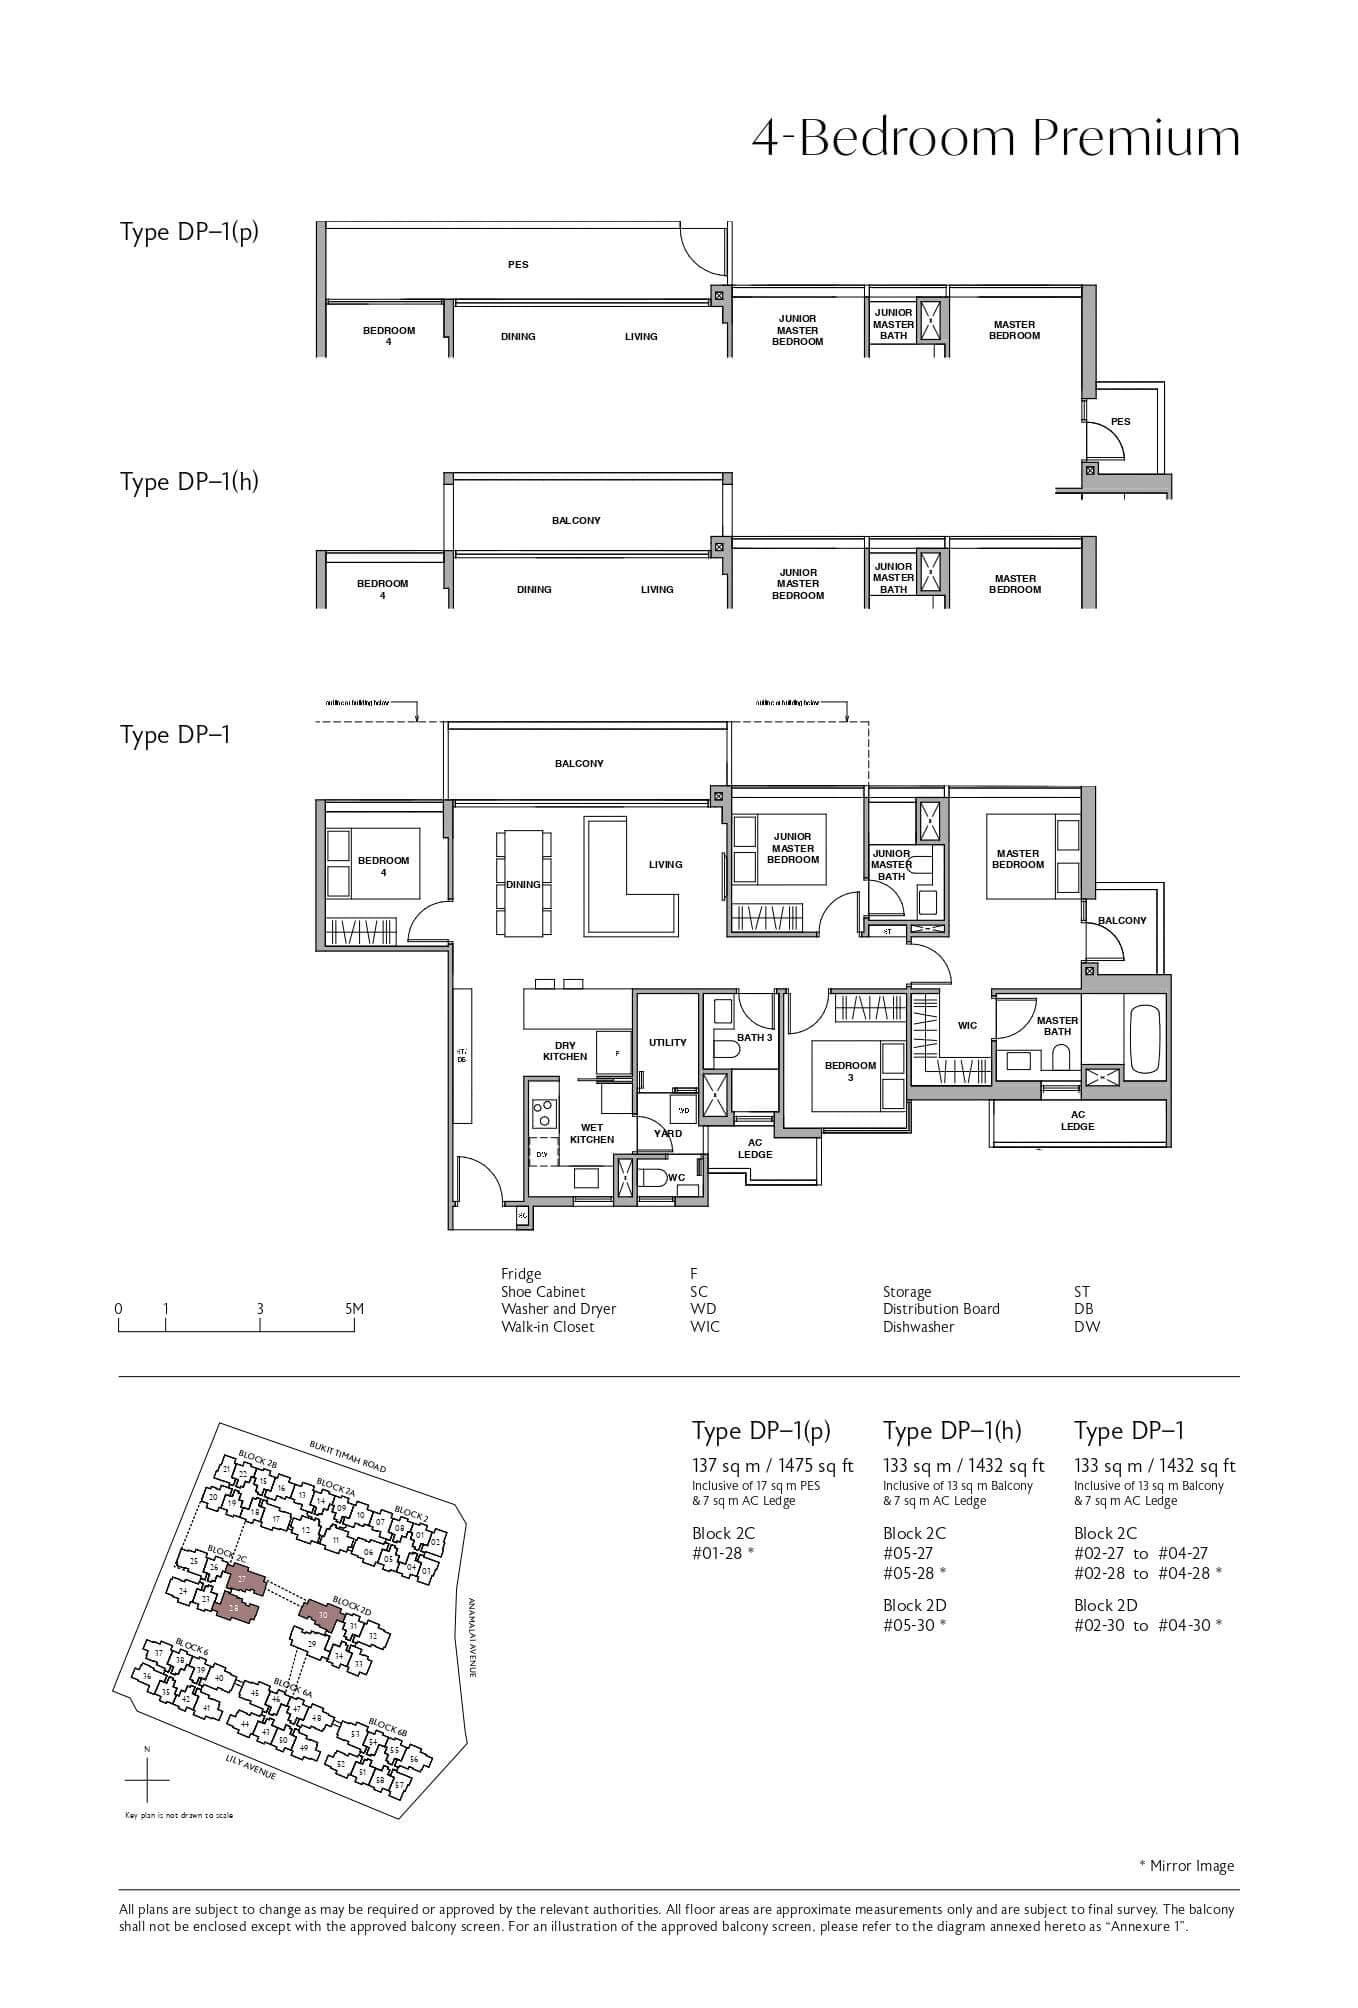 fp-royalgreen-dp-1-floor-plan.jpg